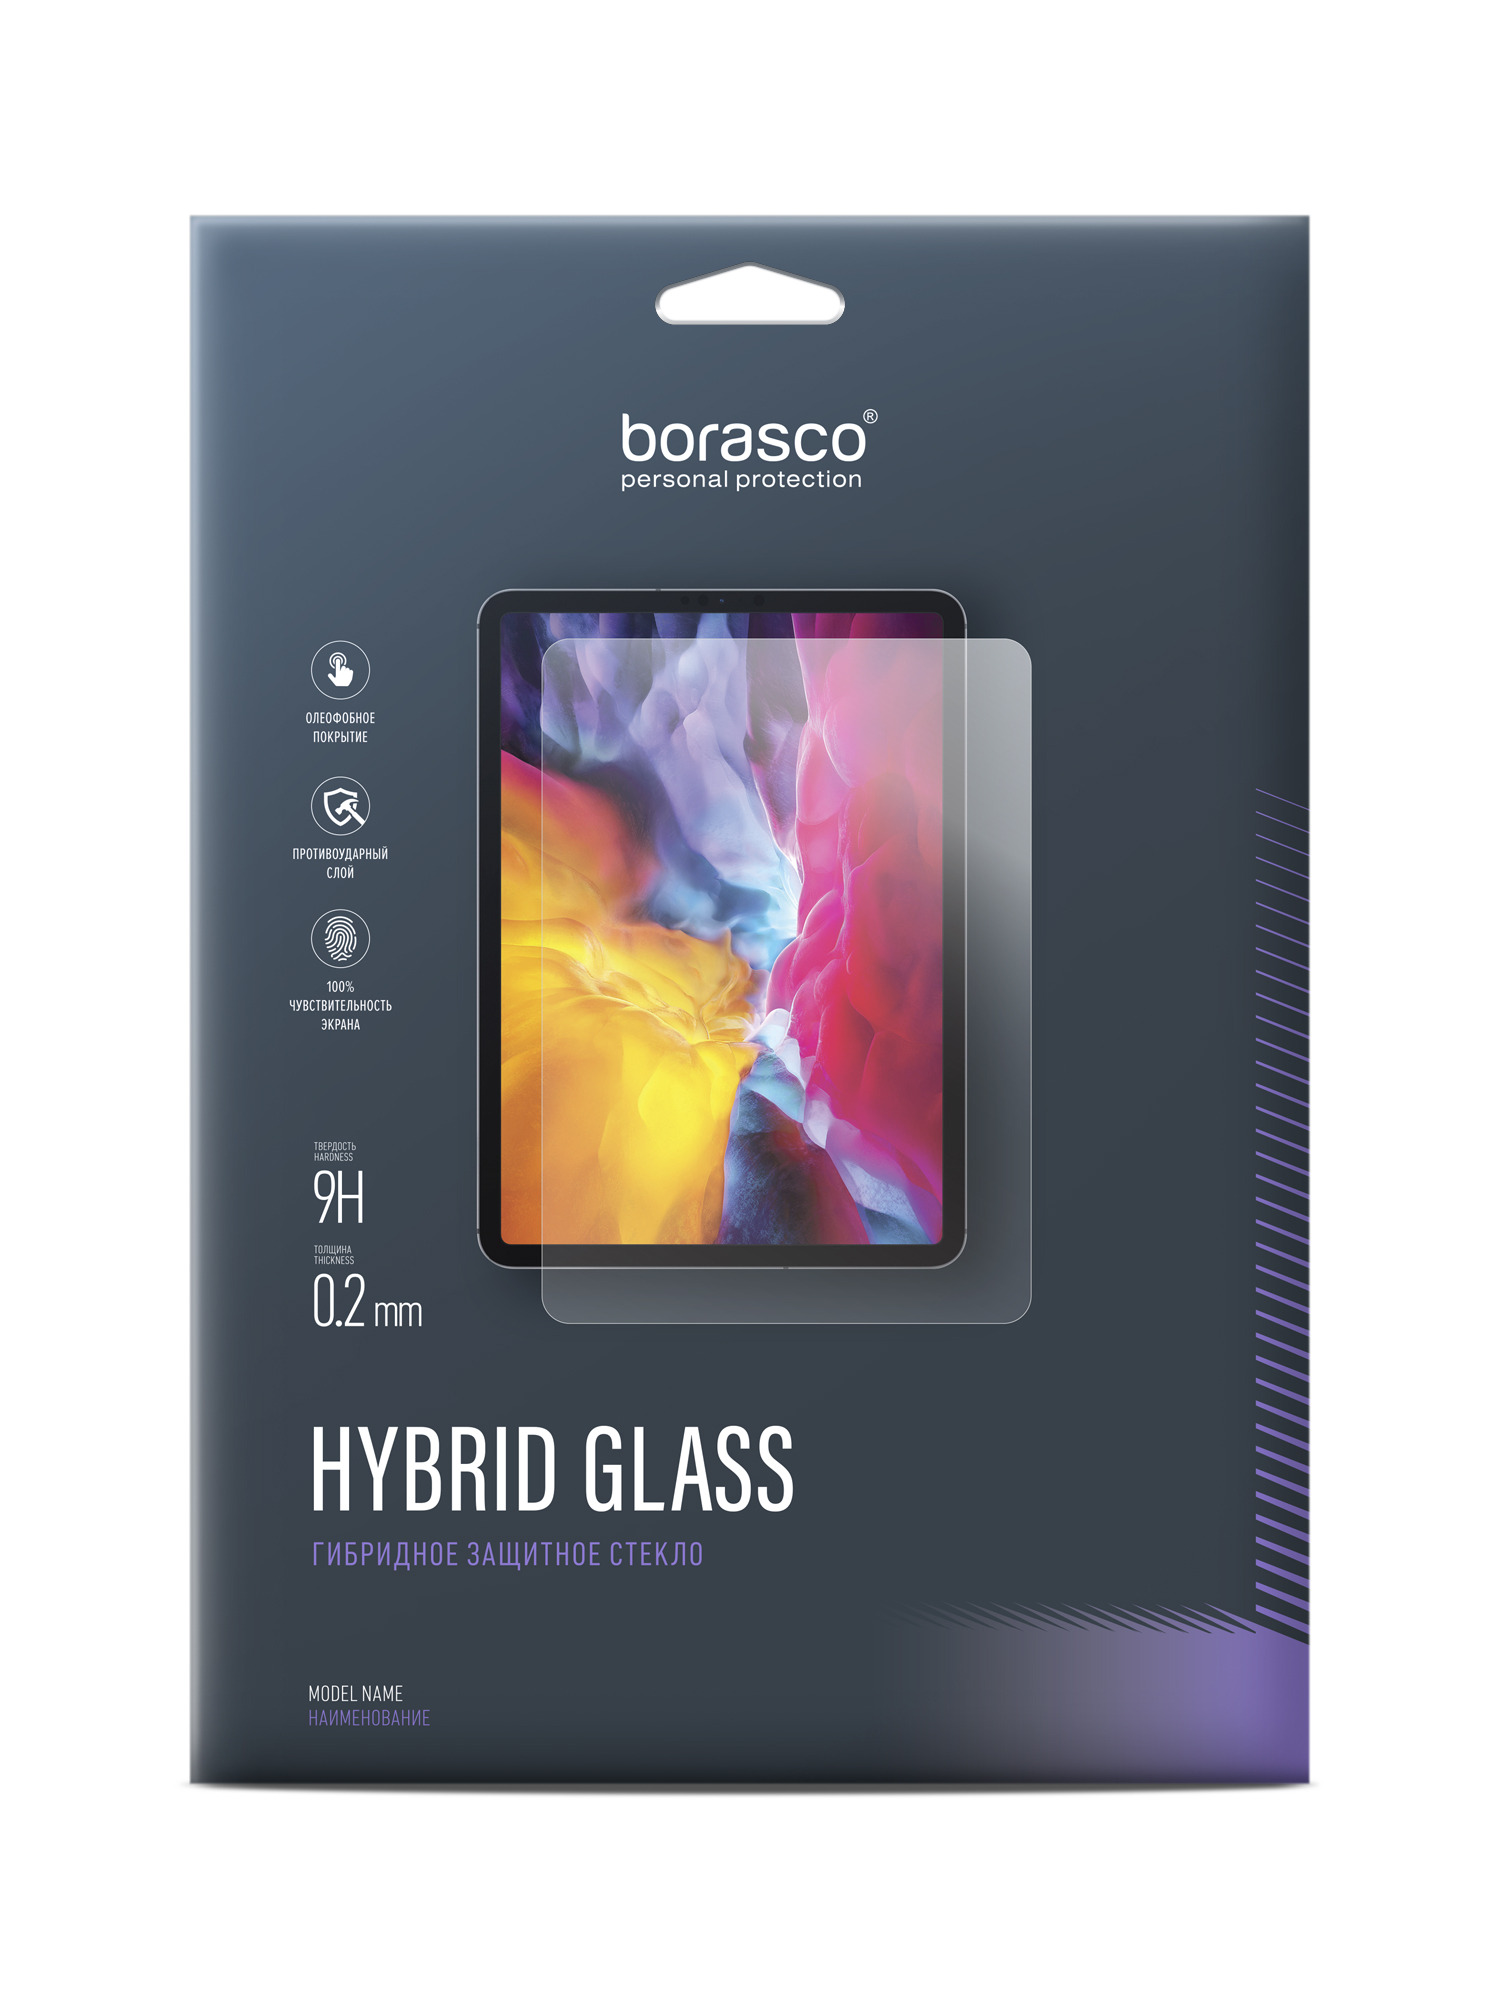 Защитное стекло Hybrid Glass для Sony Xperia Z2 Tablet 2 шт закаленное защитное стекло для смартфонов sony xperia z5 premium z4 z3 plus z2 компактная защита экрана для sony z1 z